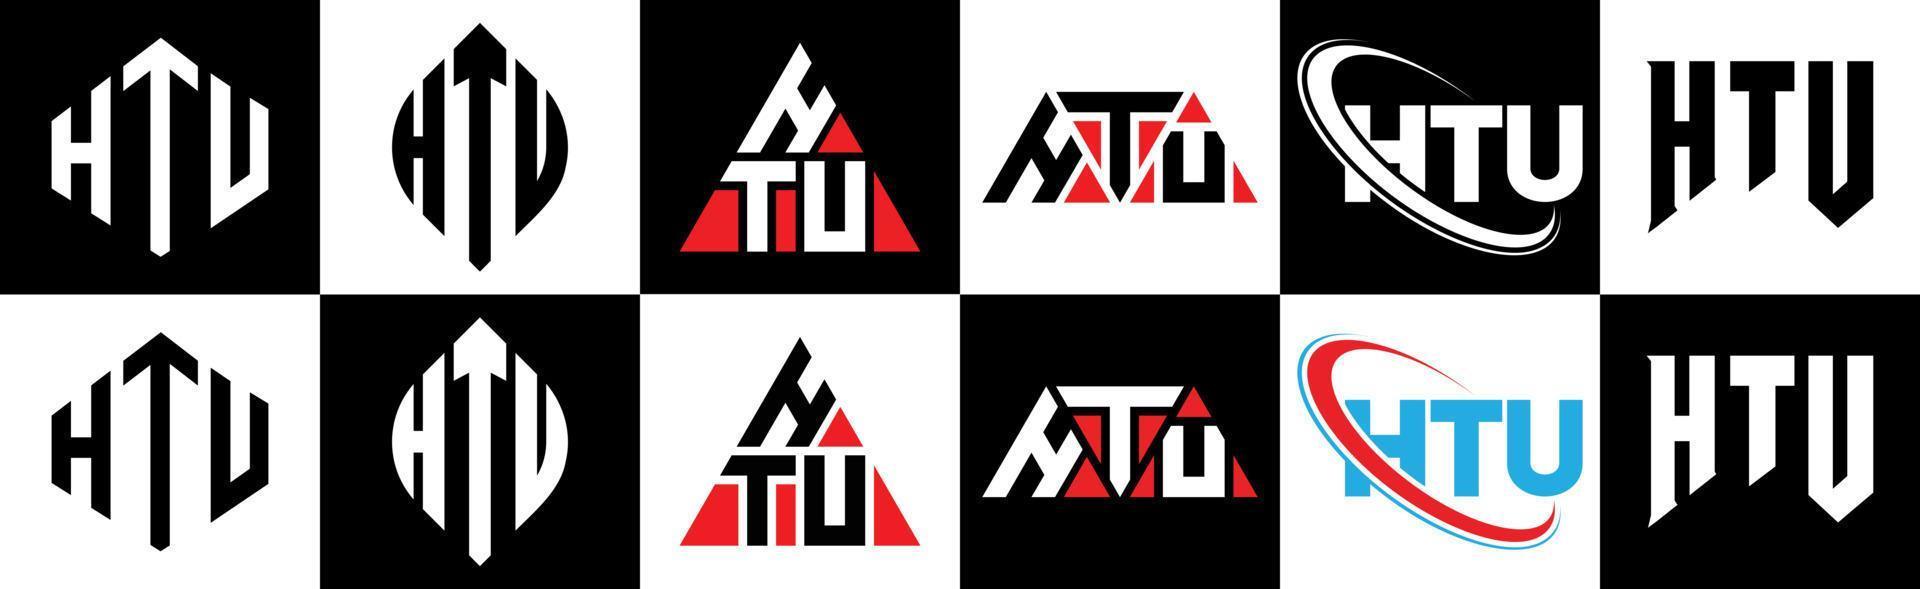 htu-Buchstaben-Logo-Design in sechs Stilen. htu polygon, kreis, dreieck, sechseck, flacher und einfacher stil mit schwarz-weißem buchstabenlogo in einer zeichenfläche. htu minimalistisches und klassisches Logo vektor